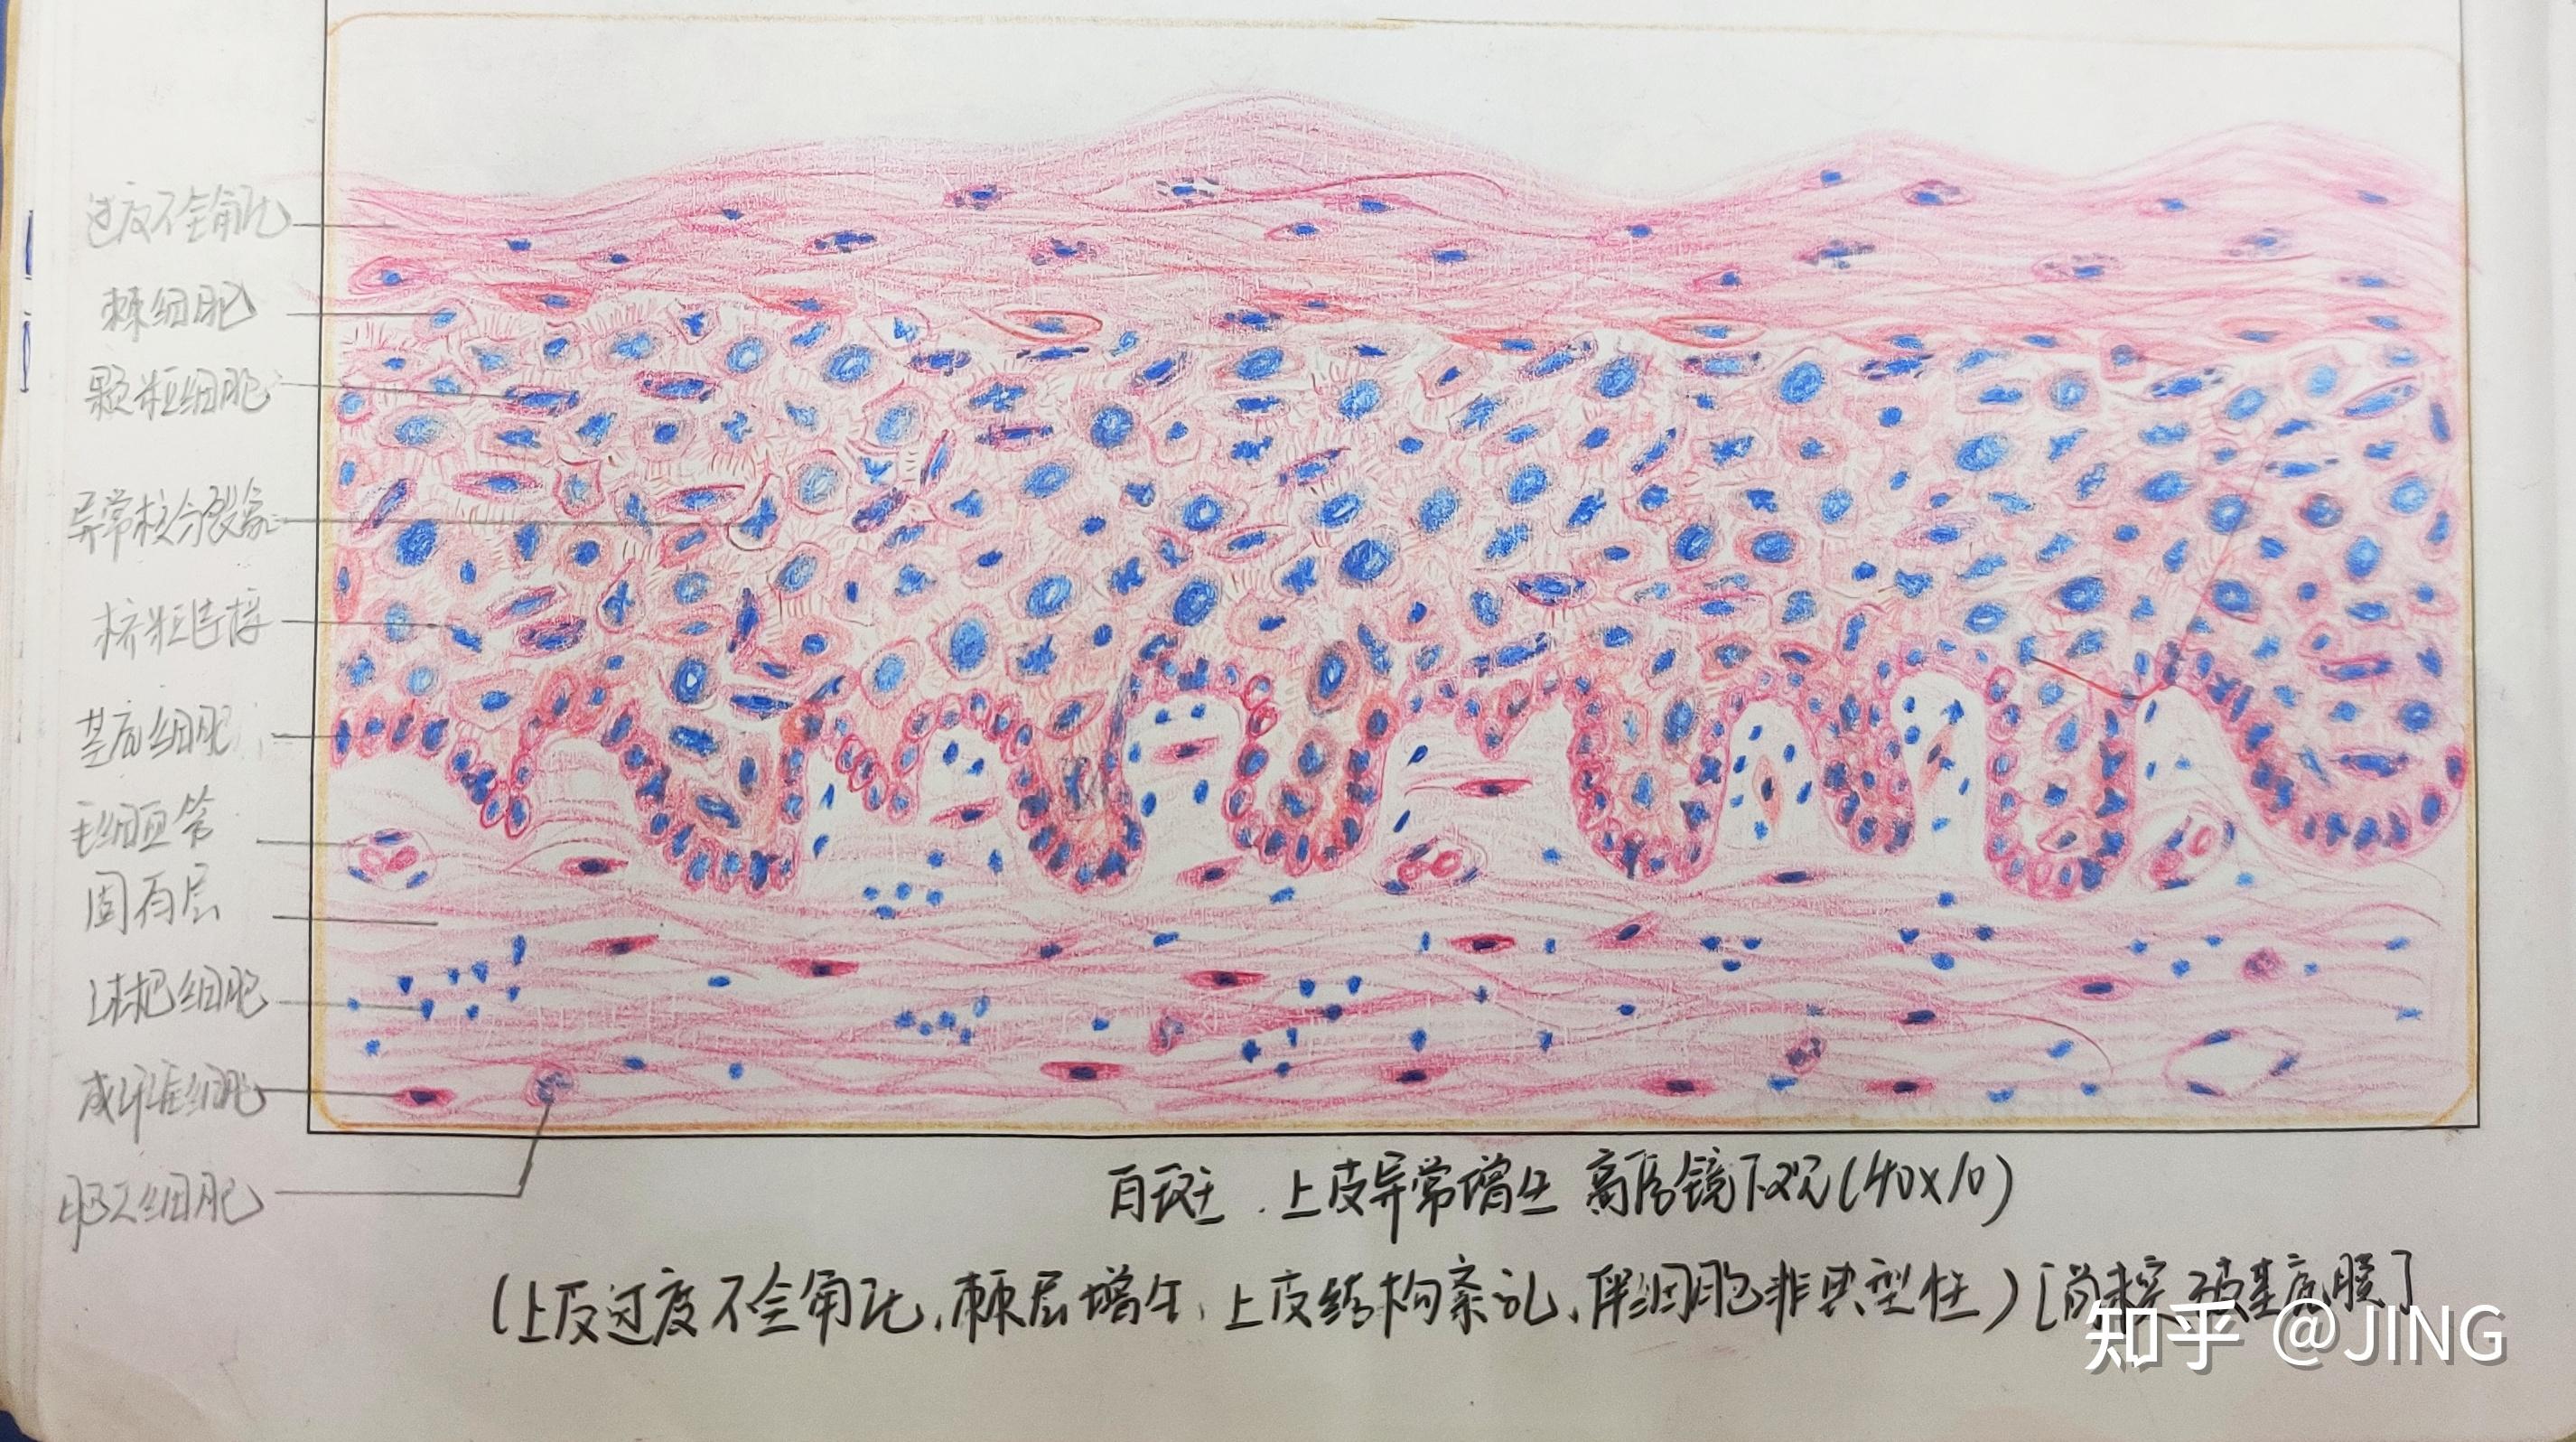 一些口腔组织病理学的红蓝铅笔图